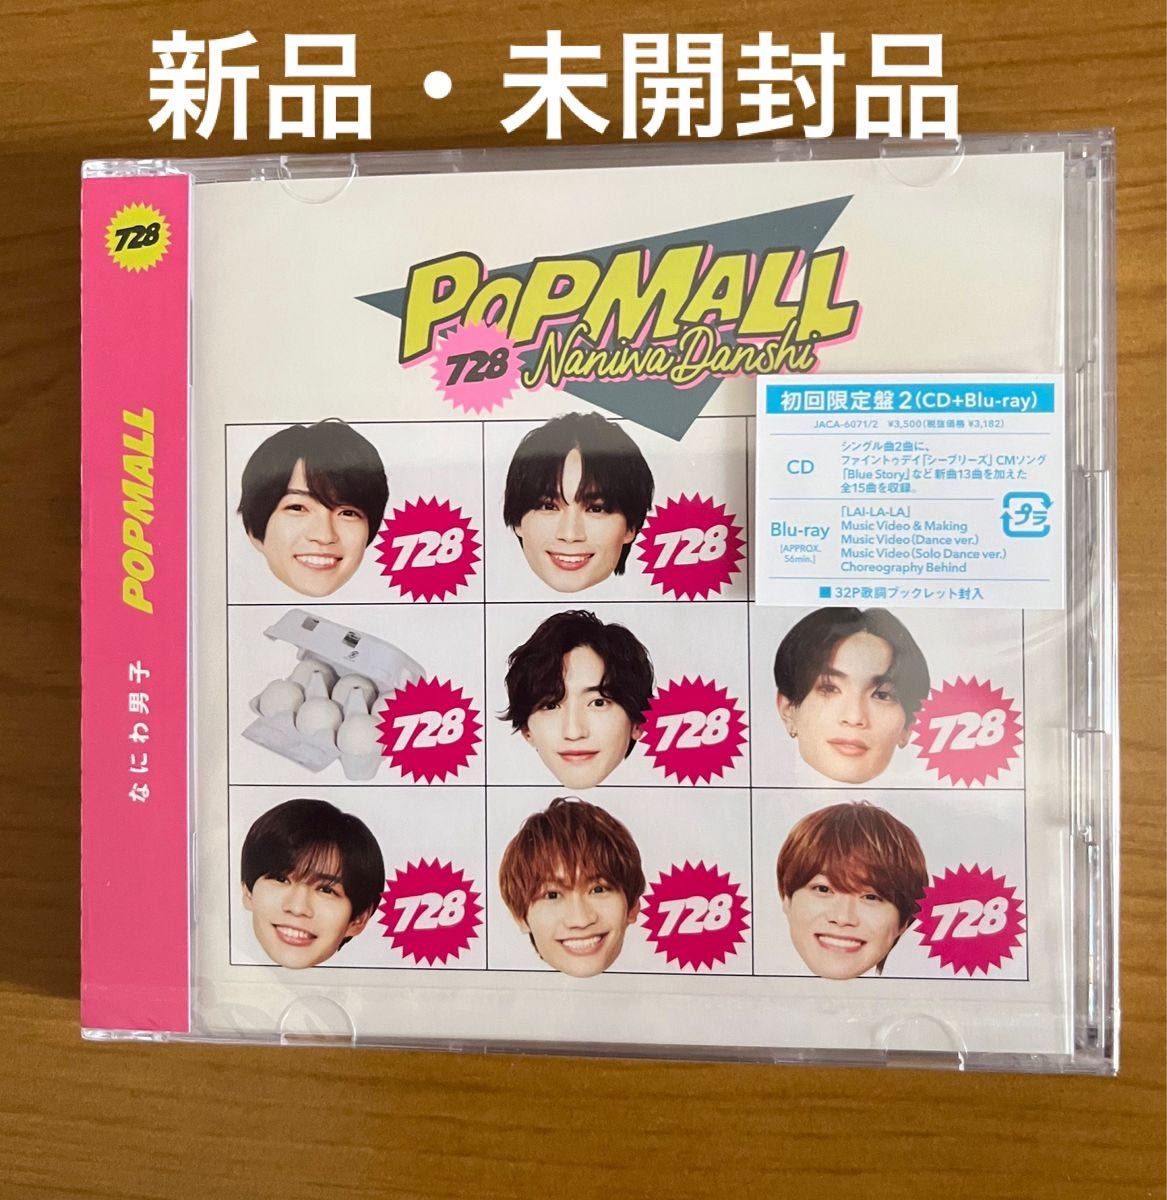 新品未開封品　初回限定盤2 Blu-ray付 なにわ男子 CD+Blu-ray/POPMALL 